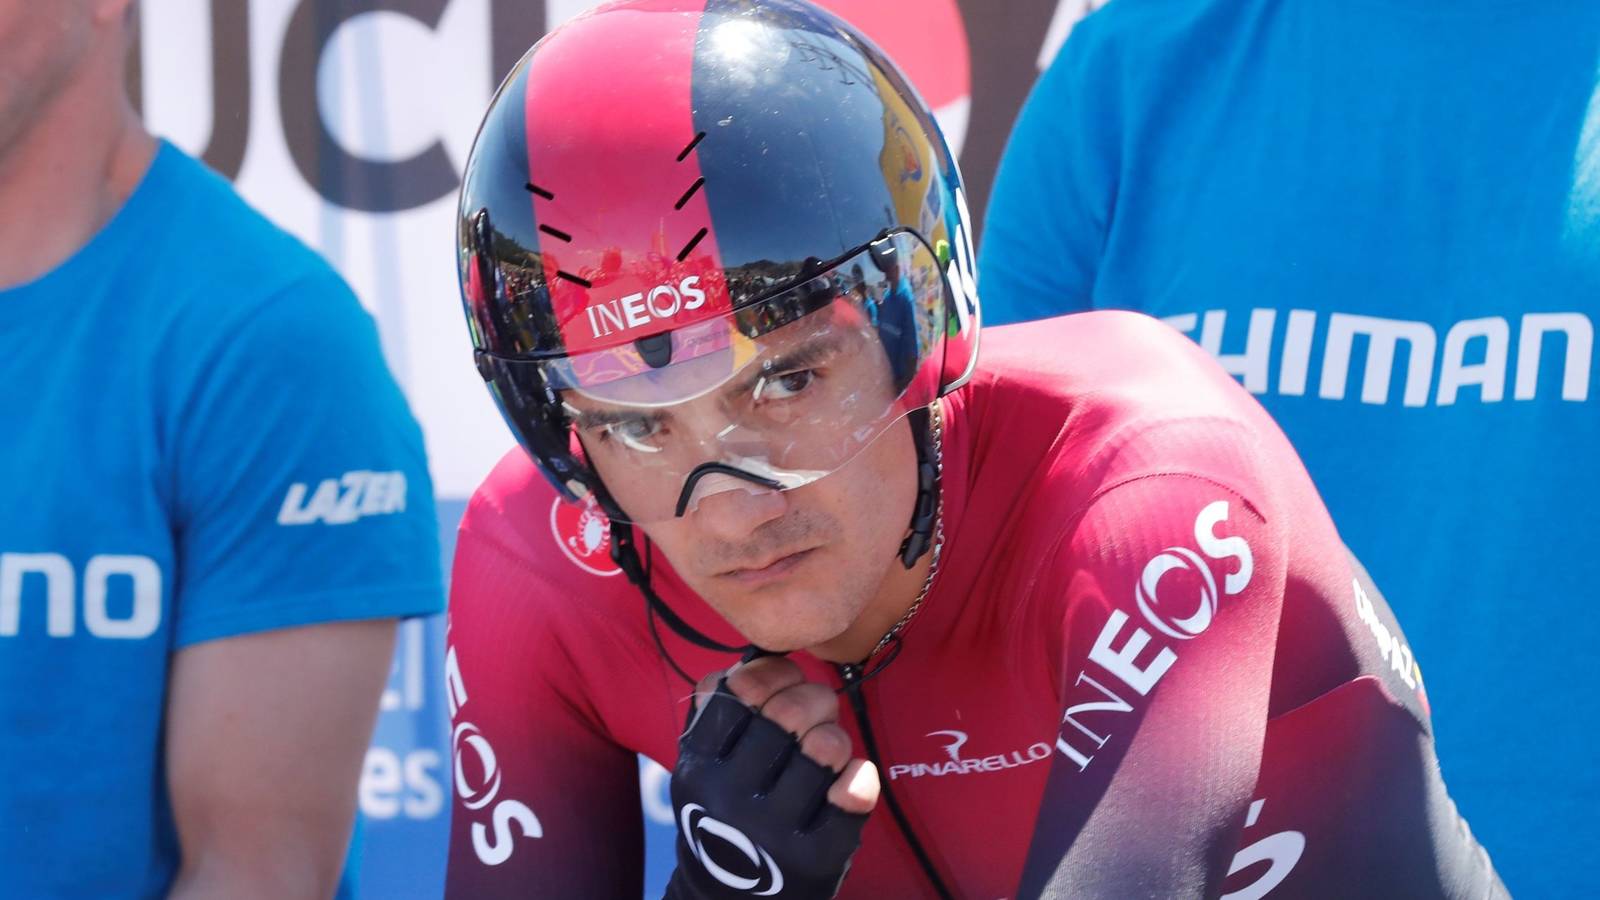 Richard Carapaz es el nuevo líder de la Vuelta a España, Izagirre gana la sexta etapa